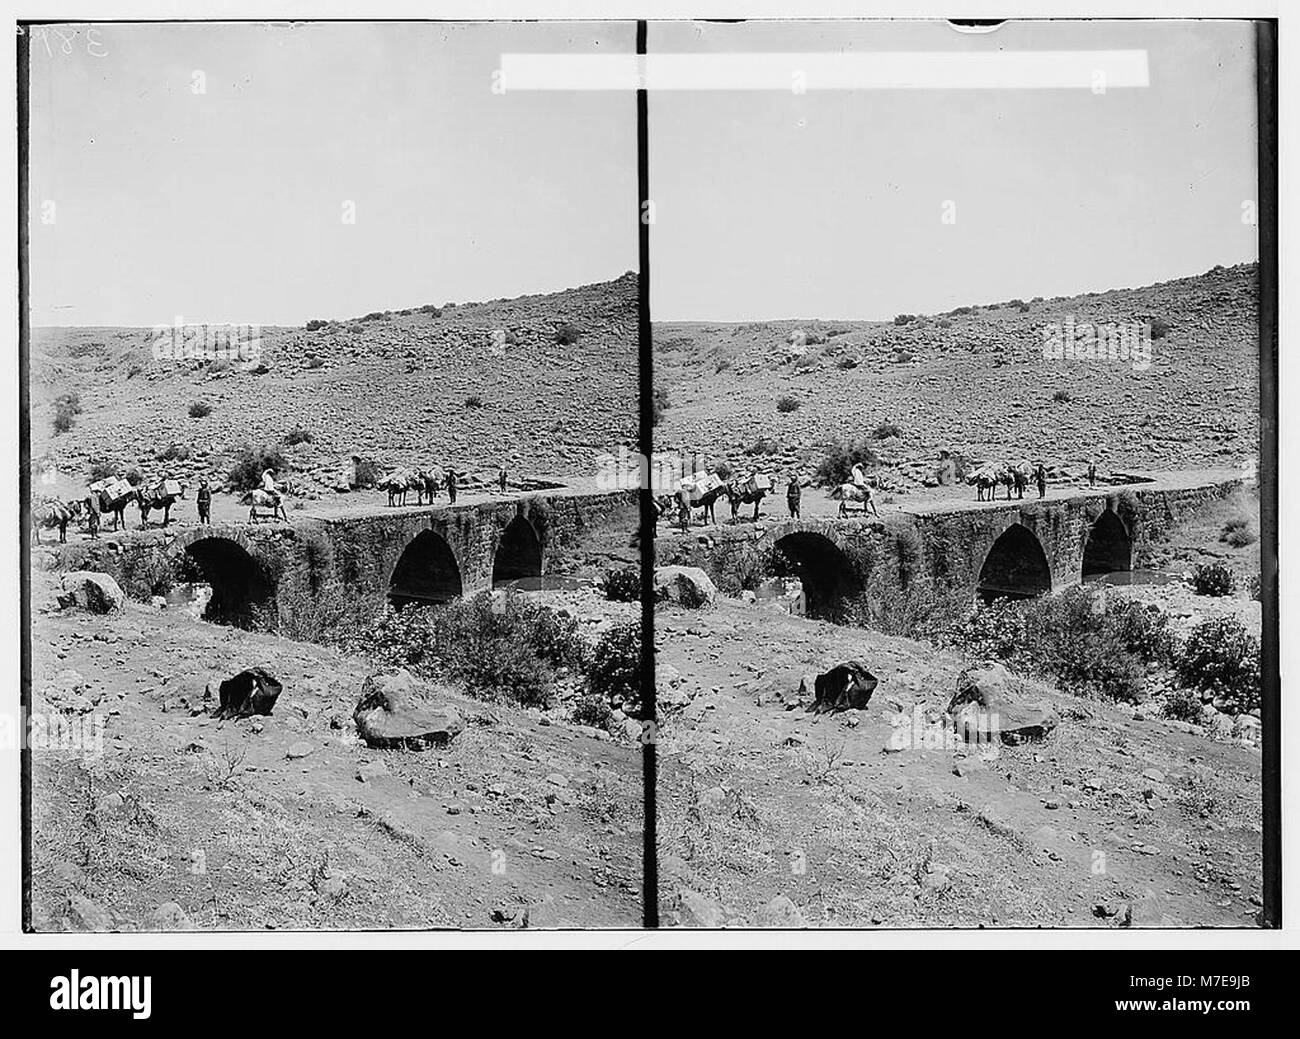 Vues du nord. Pont romain sur l'Hasbany (c.-à-d., LOC) Hasbani matpc.01117 Banque D'Images